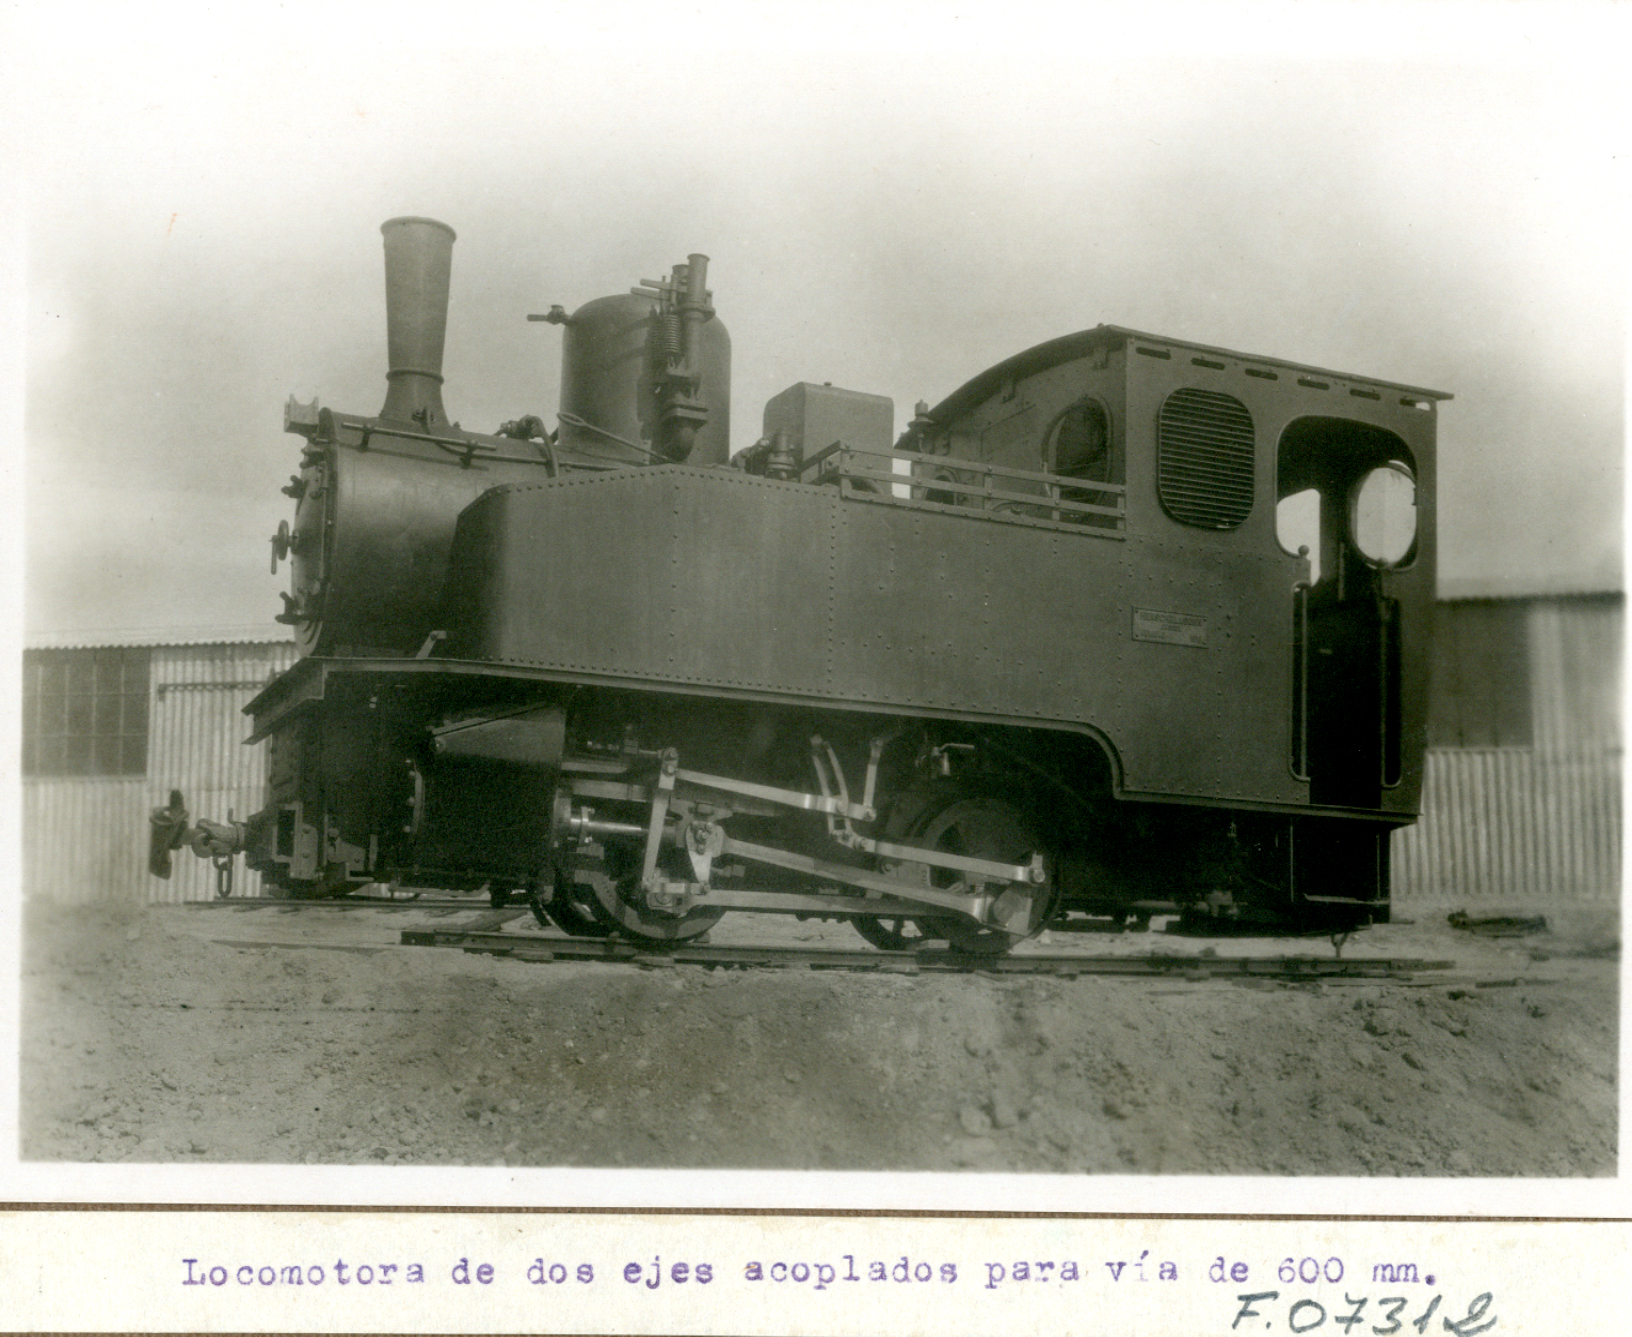 Locomotora de dos ejes acoplados para vía de 600 mm. Demostración experimental por el cuerpo de ingenieros con la presencia de Alfonso XIII. 1922-1923, Madrid